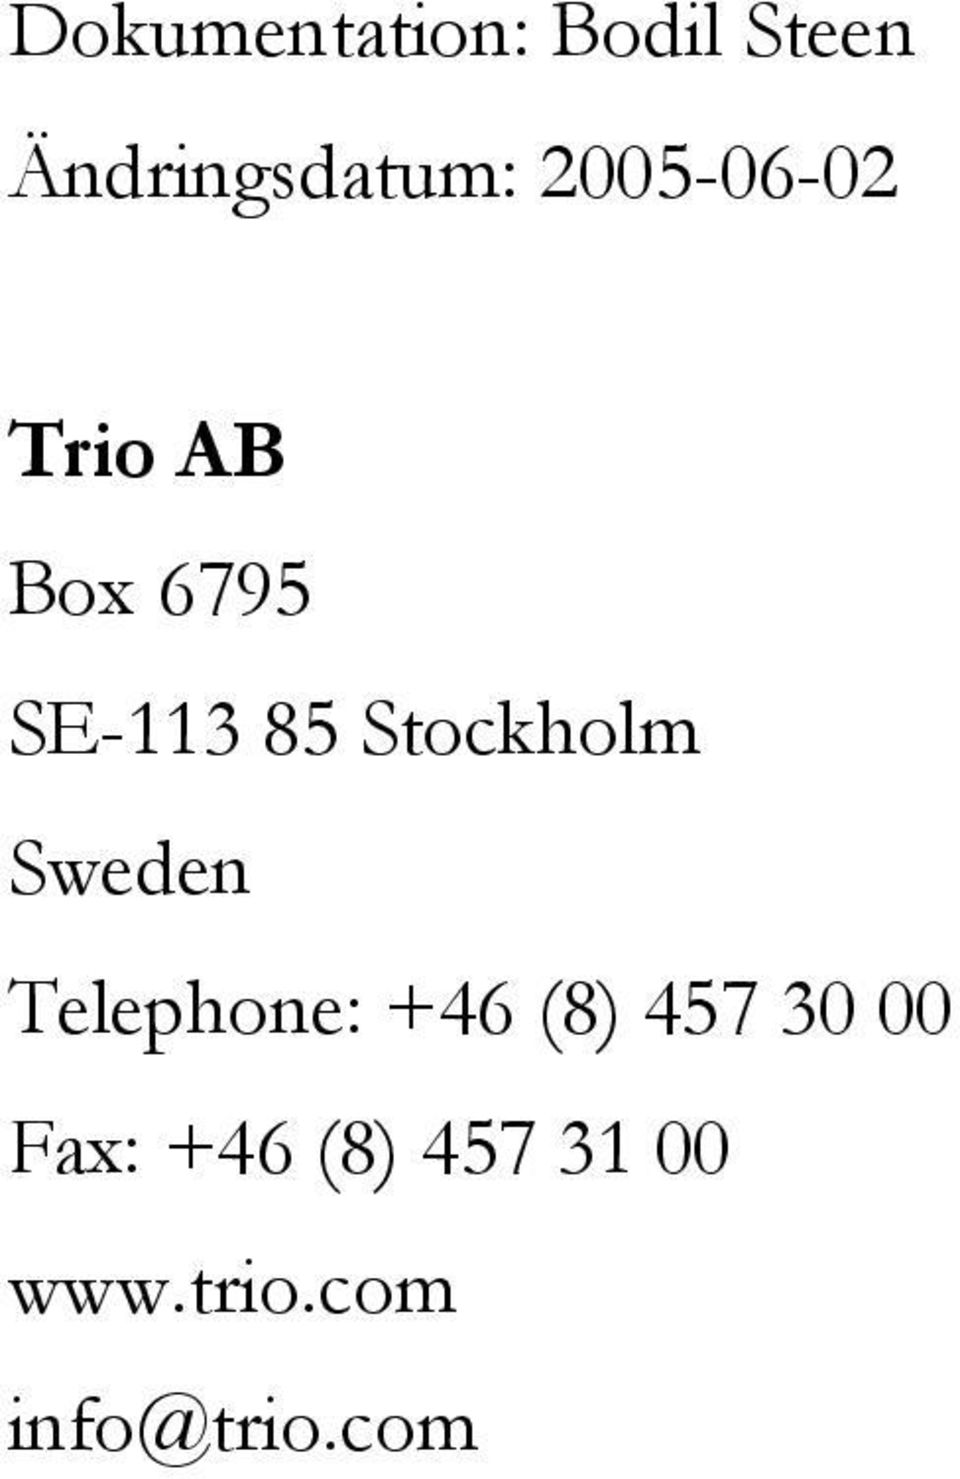 Stockholm Sweden Telephone: +46 (8) 457 30